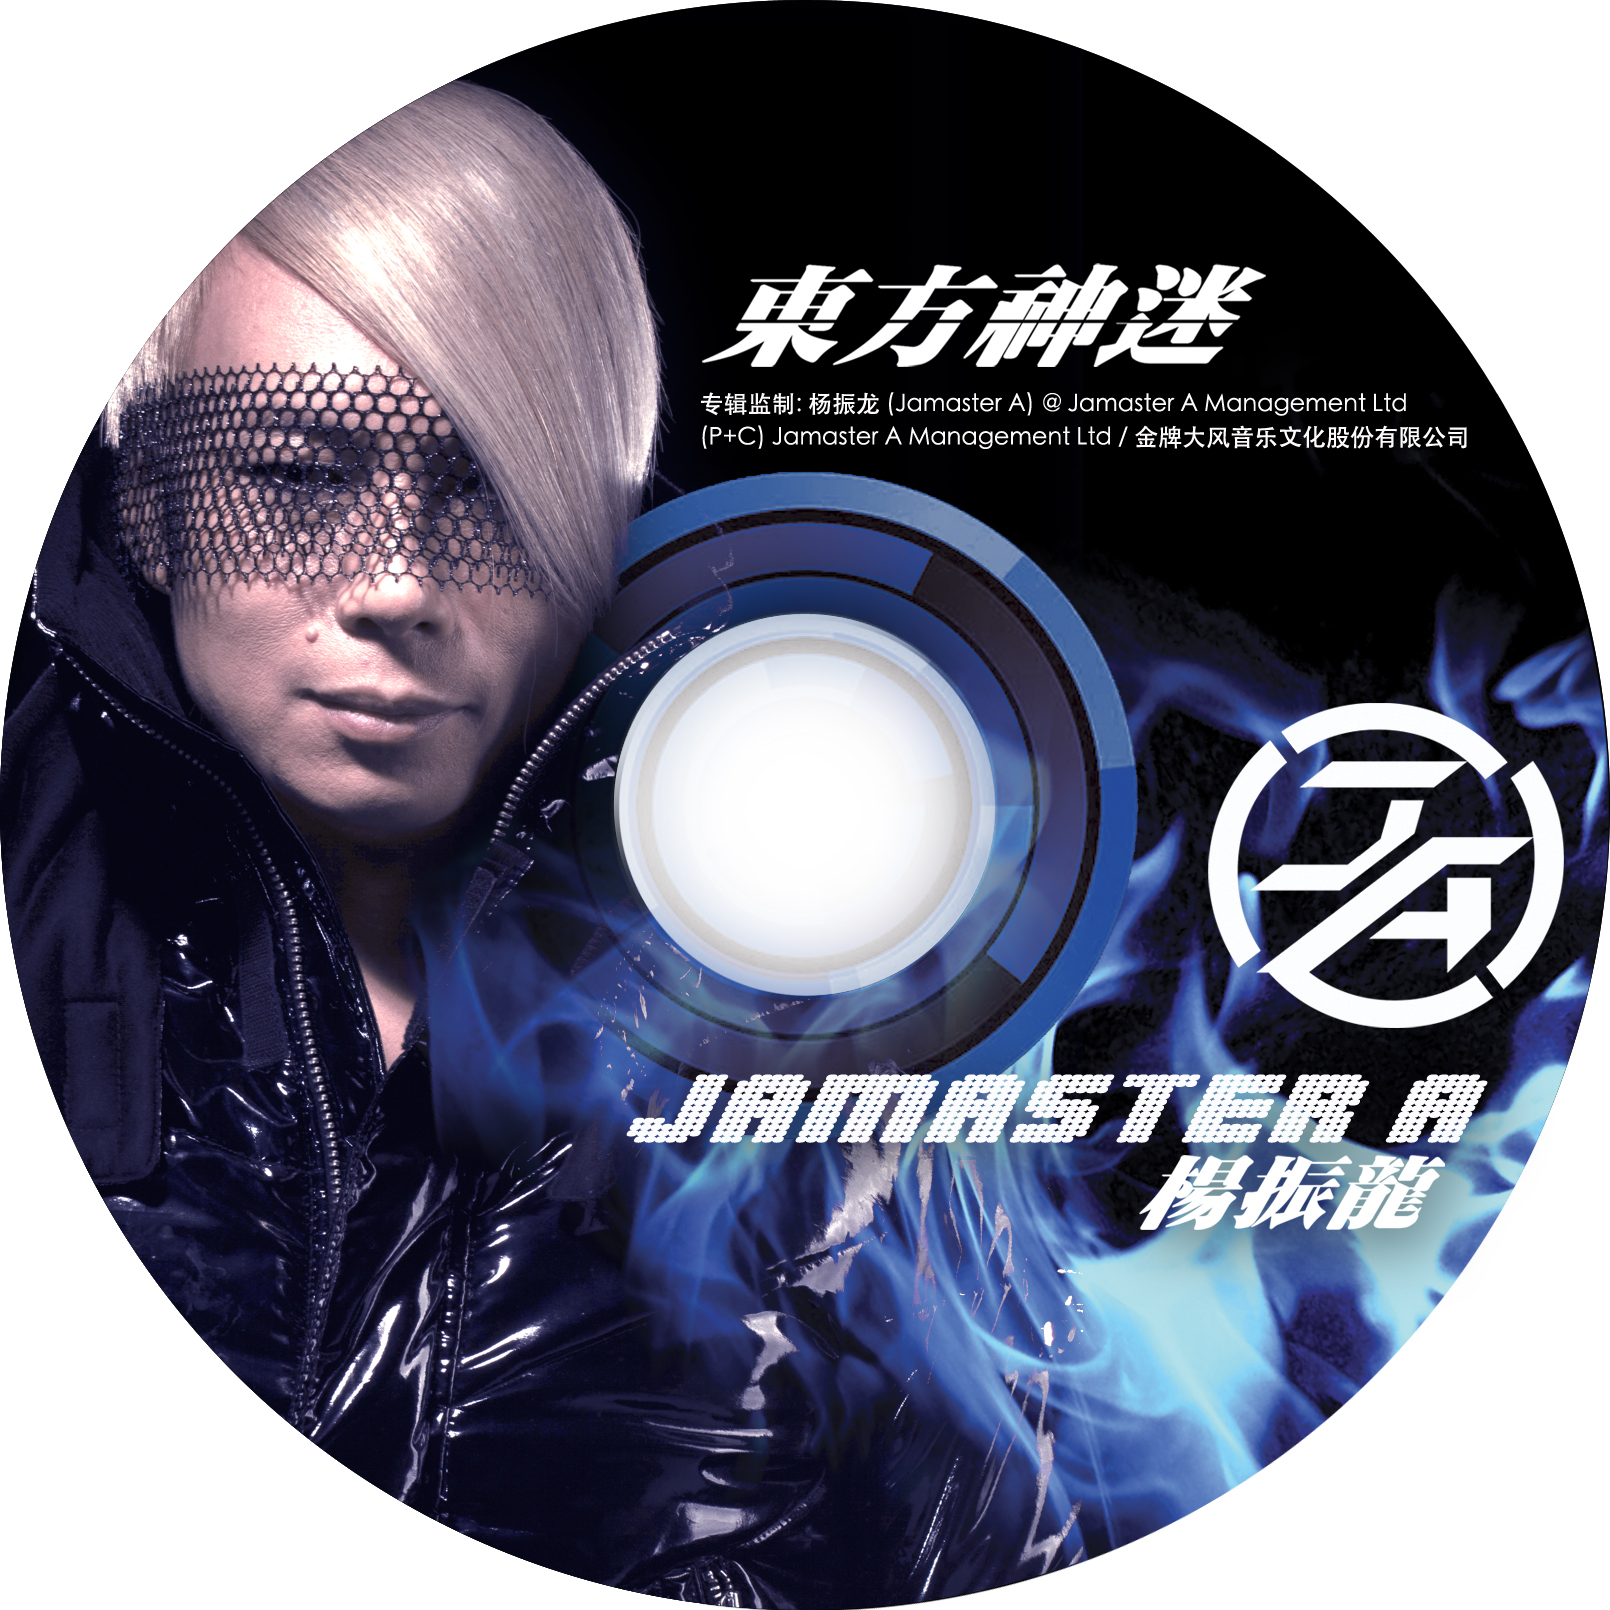 Jamaster A ft. zhang hui mei  ru guo ni ye ting shuo Max VS Jamaster A Remix